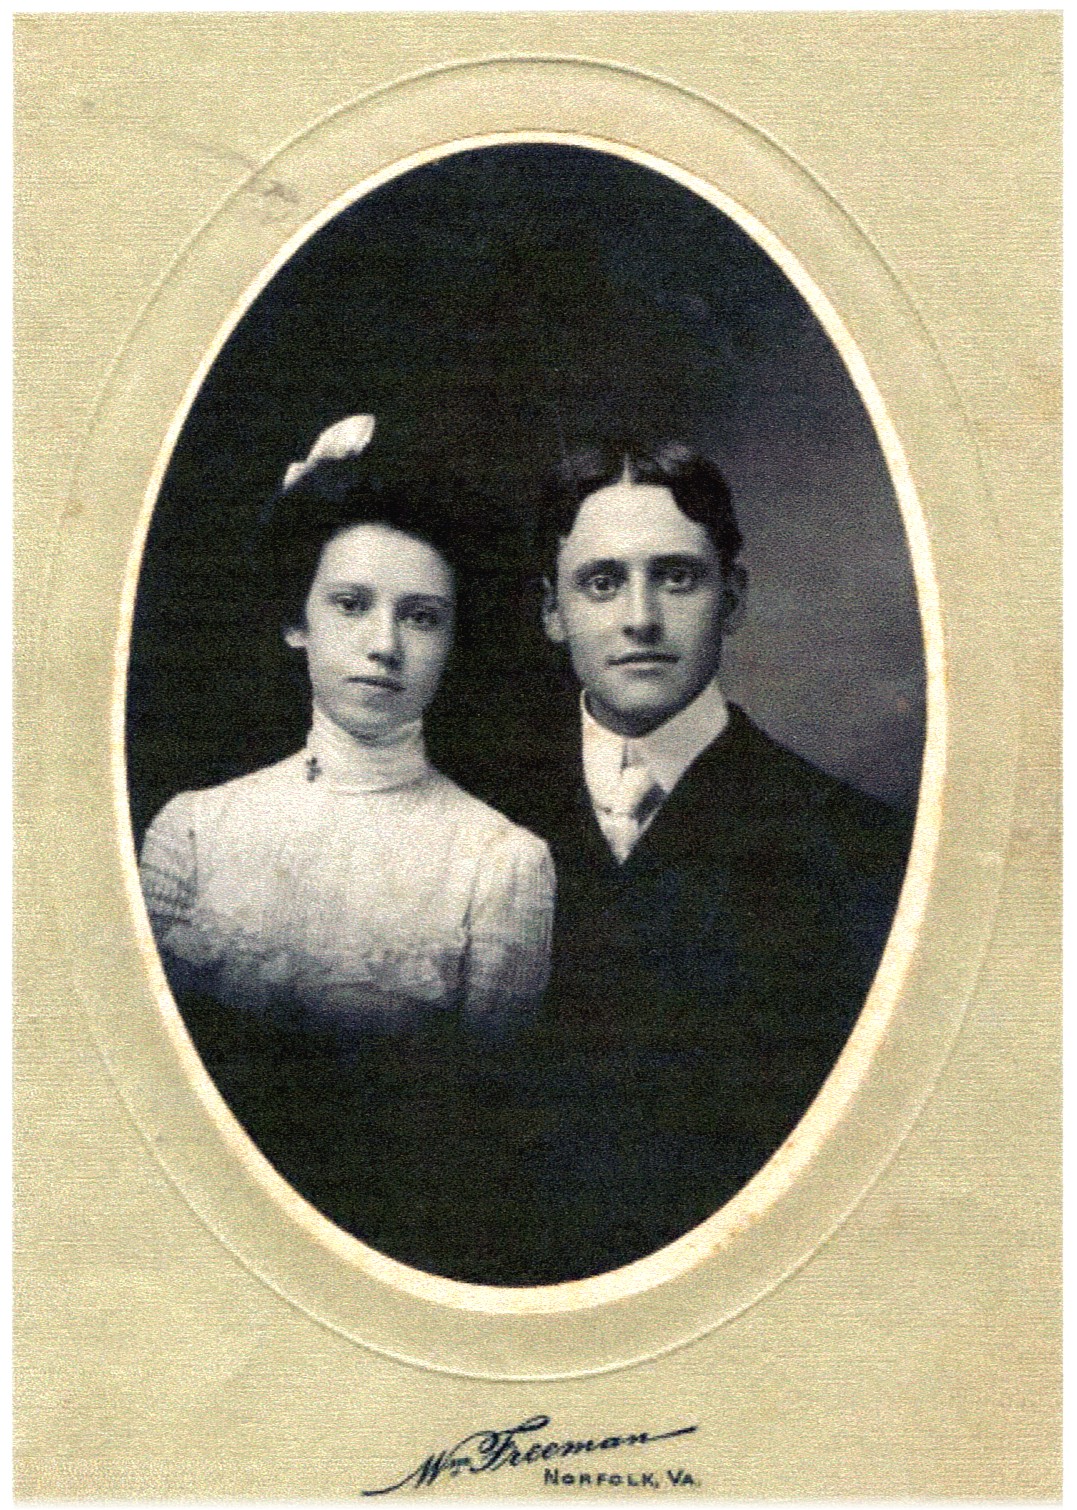 Benjamin Winthrop Showalter & wife Leona